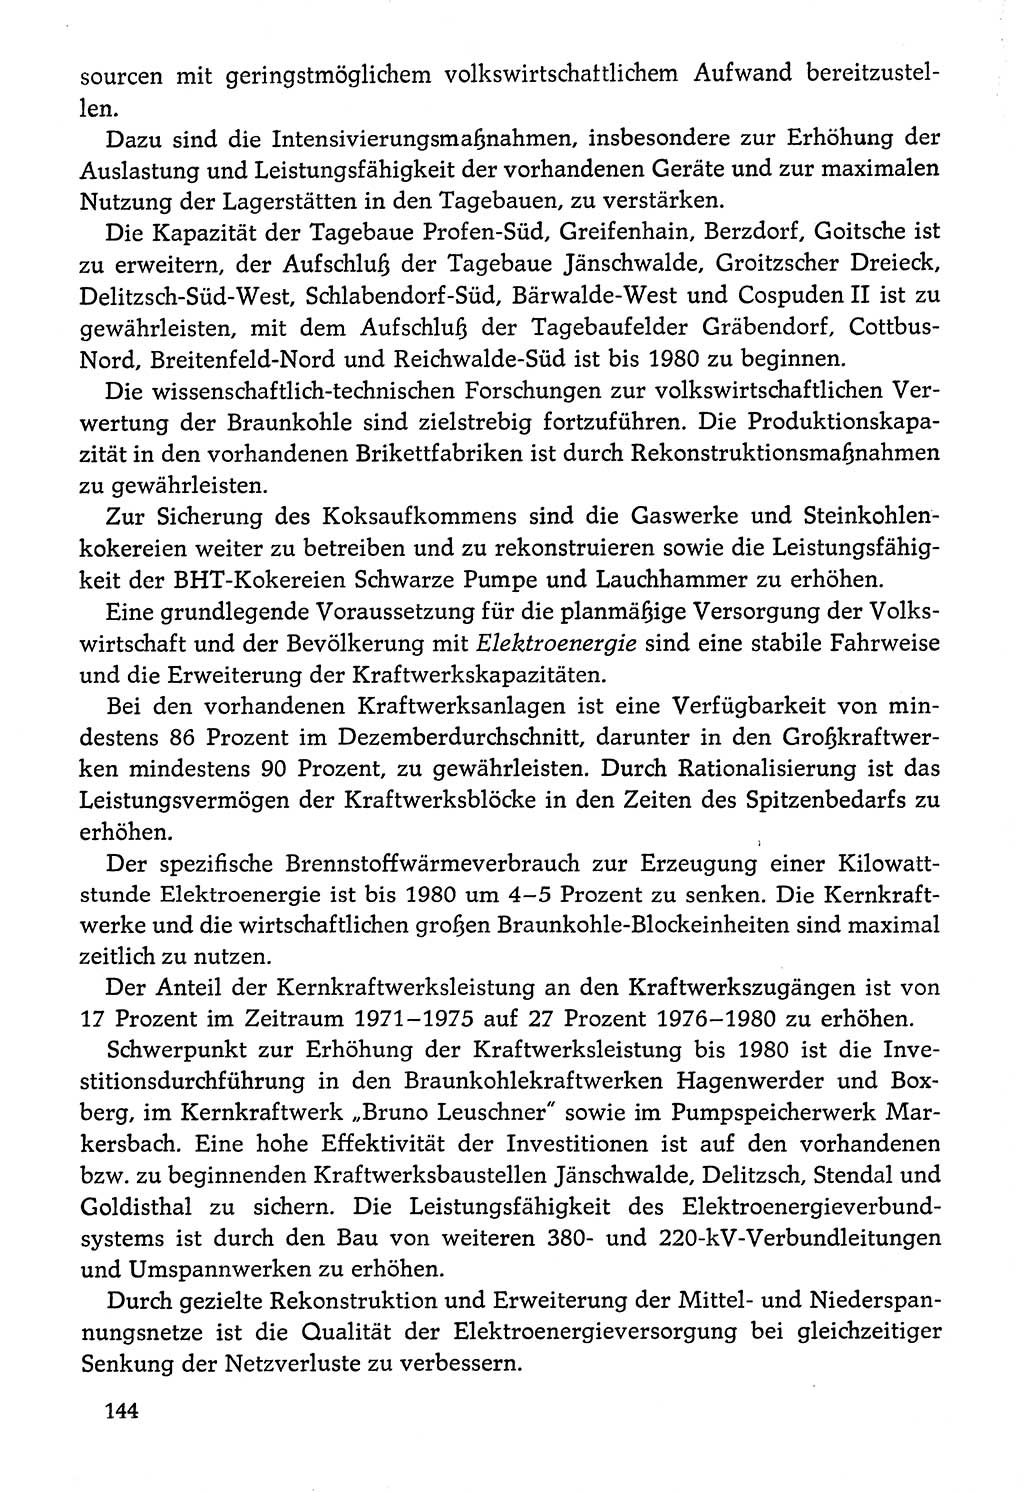 Dokumente der Sozialistischen Einheitspartei Deutschlands (SED) [Deutsche Demokratische Republik (DDR)] 1976-1977, Seite 144 (Dok. SED DDR 1976-1977, S. 144)